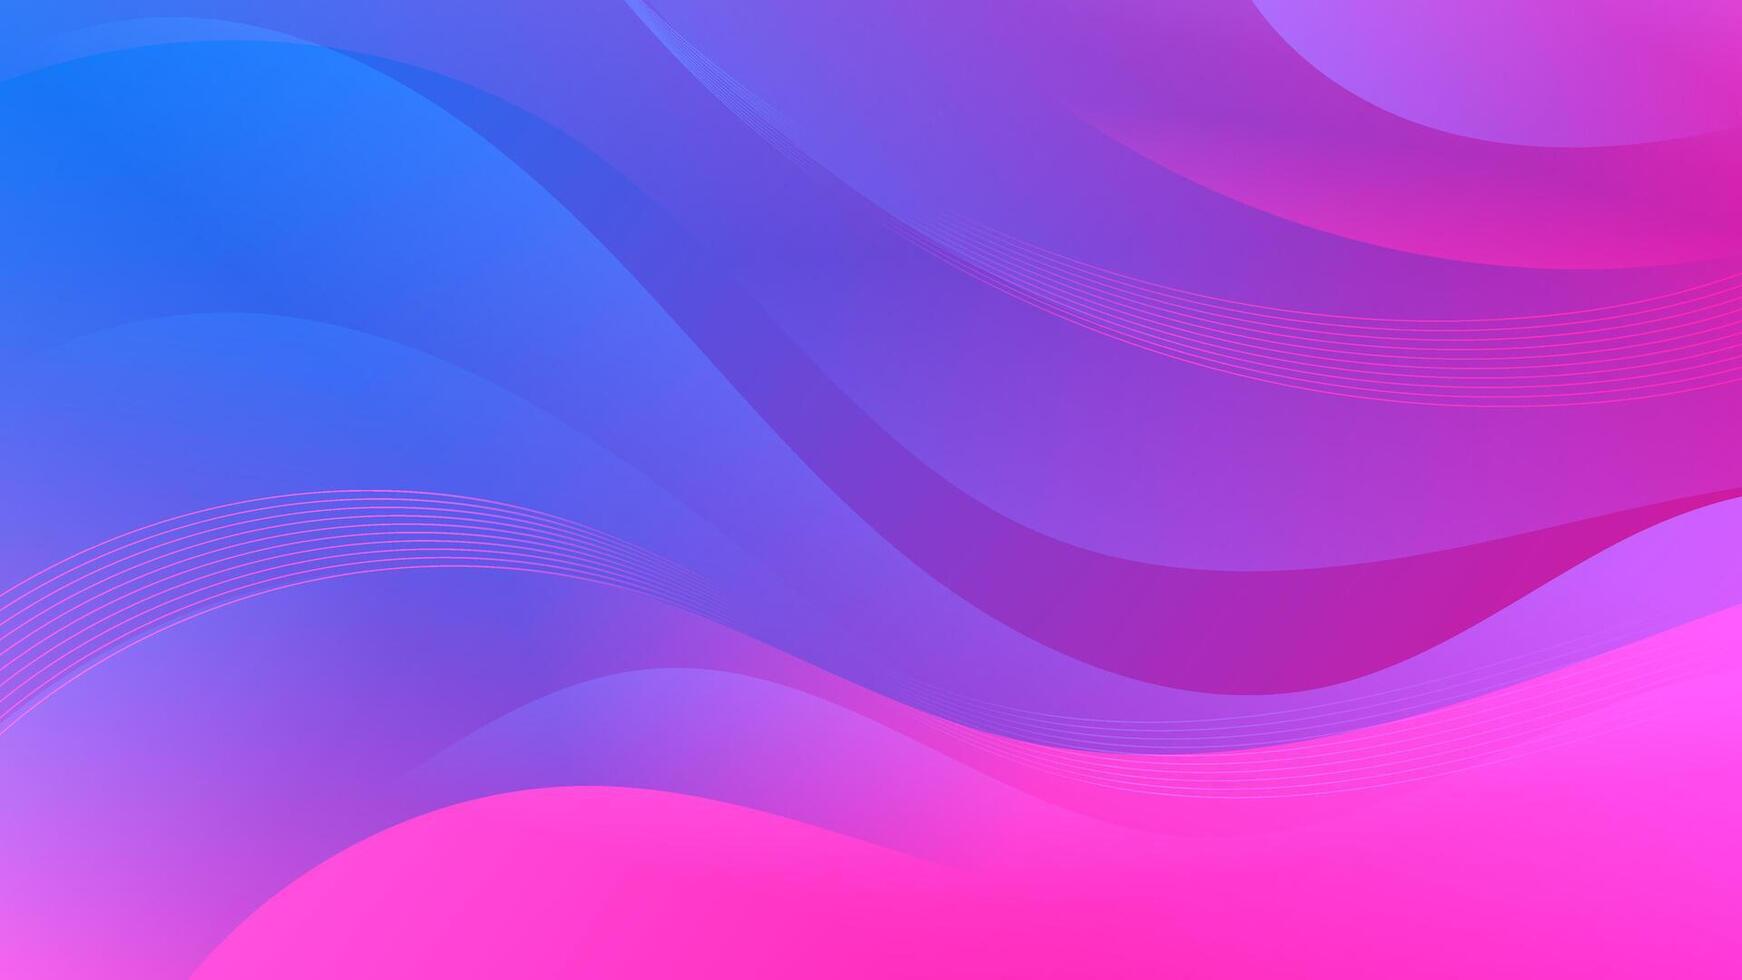 violett Blau Farbtöne im abstrakt Hintergrund mit Welle Muster. abwechslungsreich Verwendungszweck zum Webseiten, Flyer, Poster, und Digital Kunst vektor